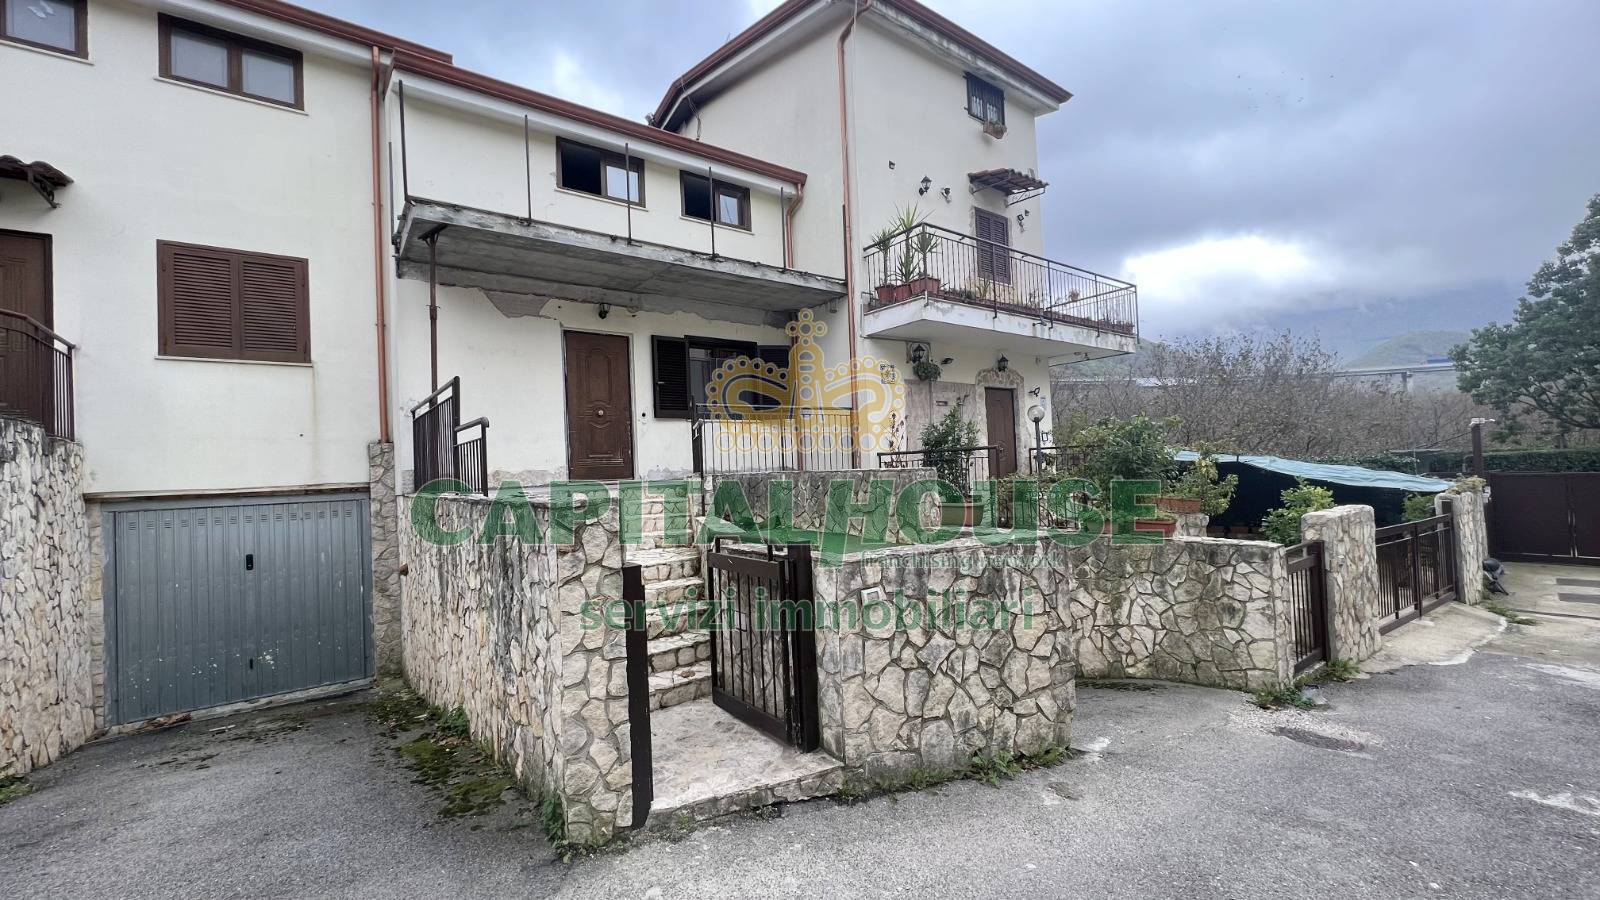 Villa a Schiera in vendita a Mugnano del Cardinale, 3 locali, prezzo € 115.000 | PortaleAgenzieImmobiliari.it